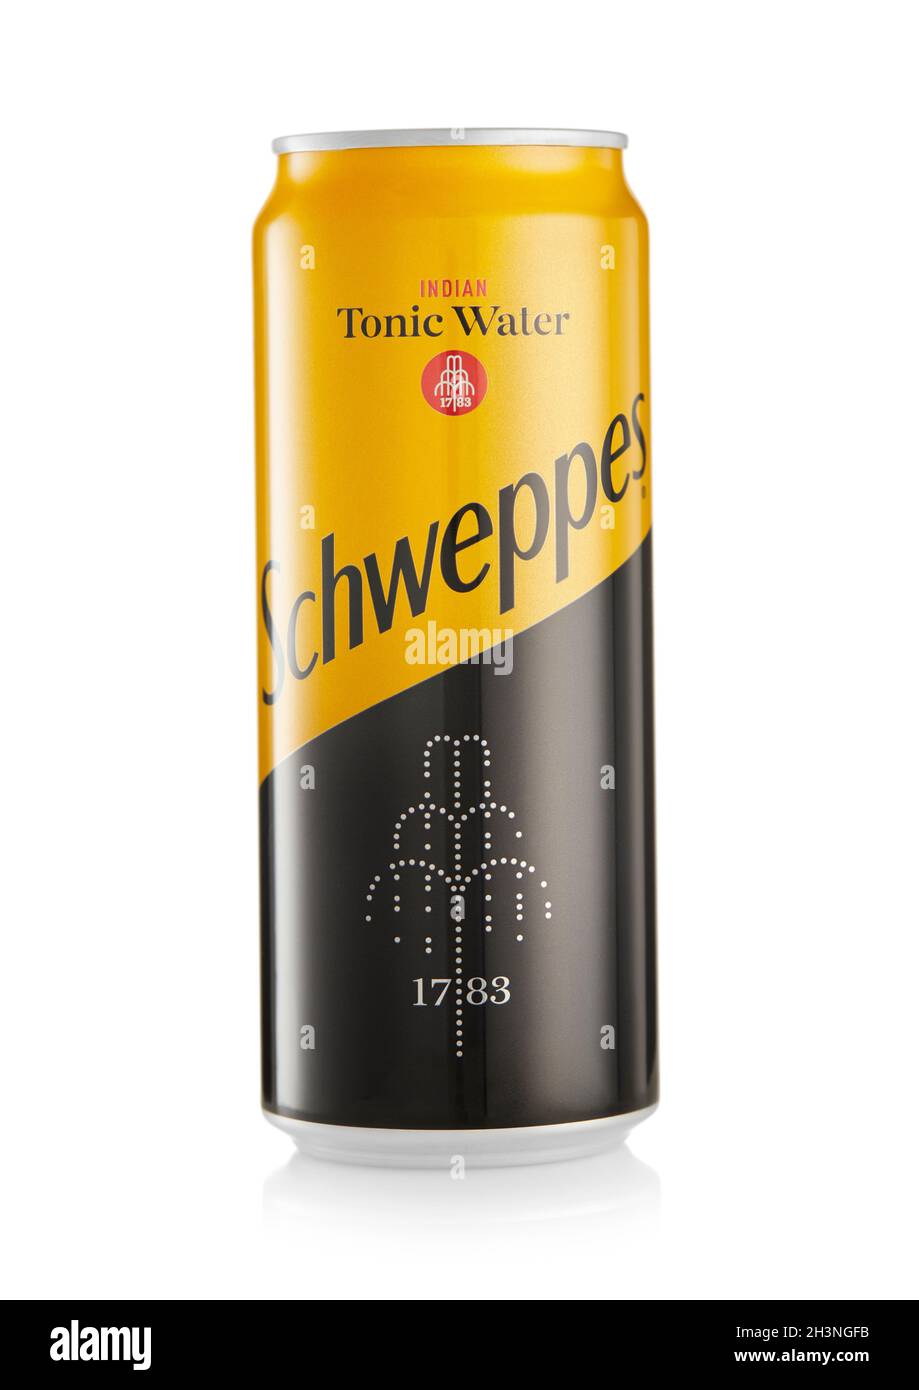 LONDRA,UK - 21 OTTOBRE 2021 : lattina di alluminio della bevanda analcolica di acqua tonica indiana di Scheppes su bianco Foto Stock